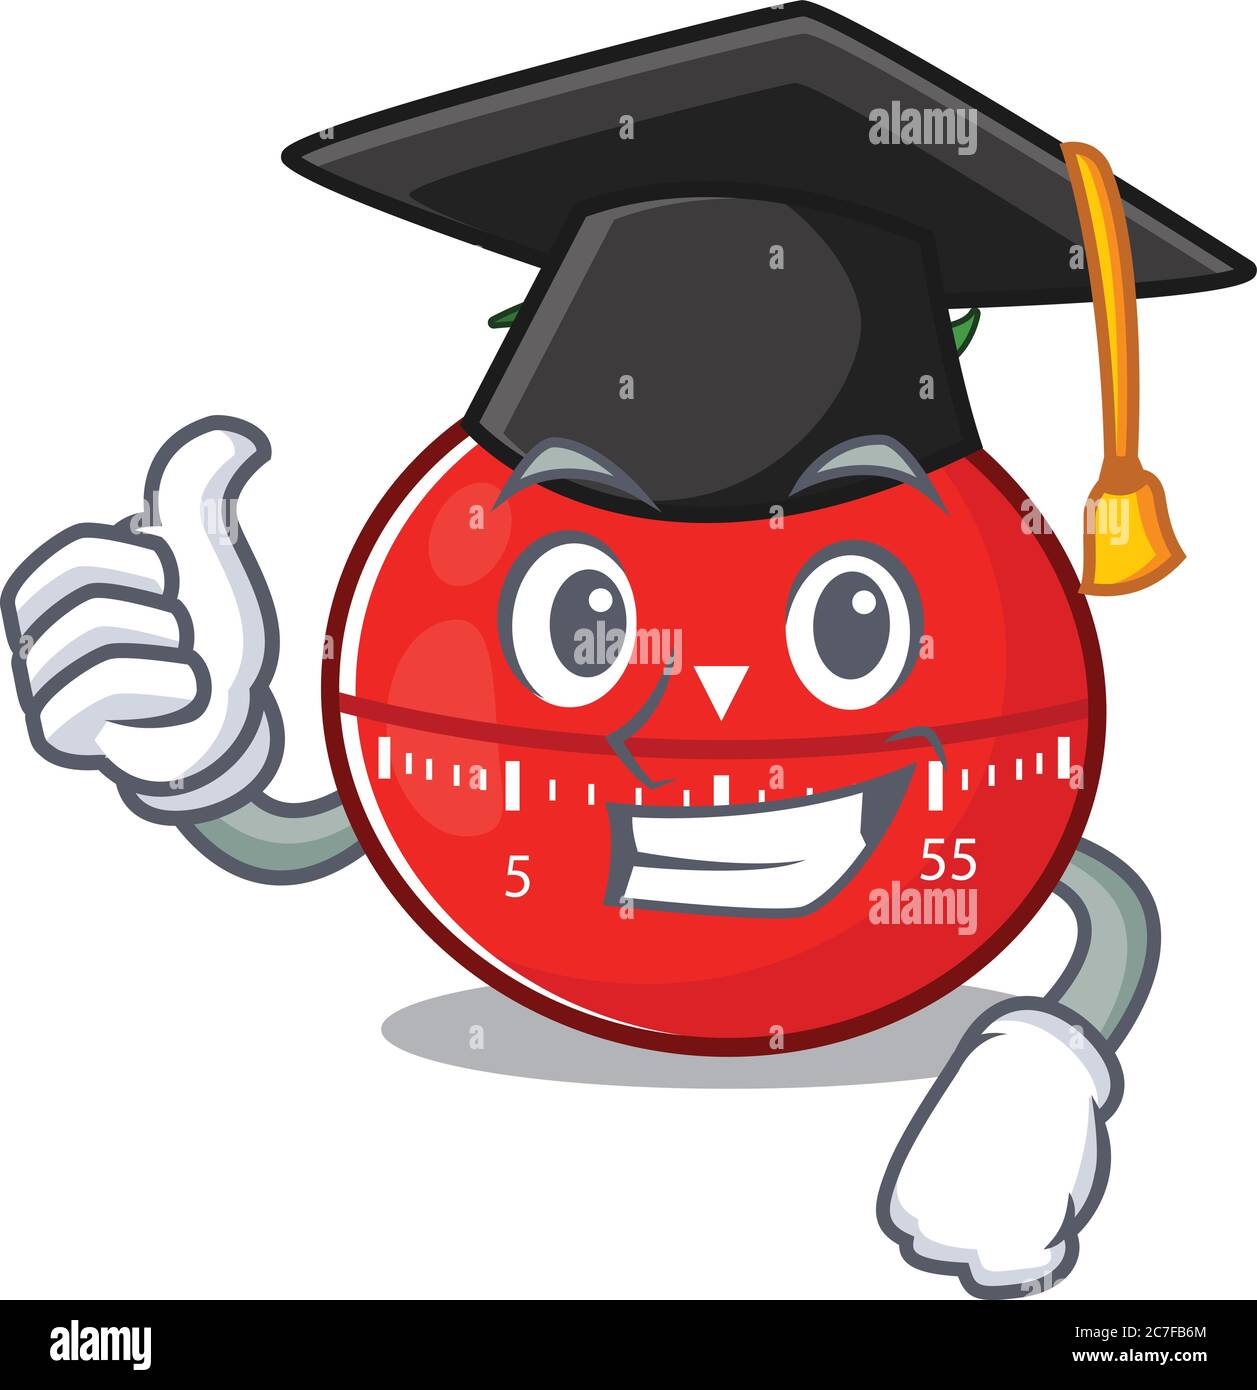 Timer cucina pomodoro disegno grafico caricature con cappello per cerimonia  di laurea Immagine e Vettoriale - Alamy